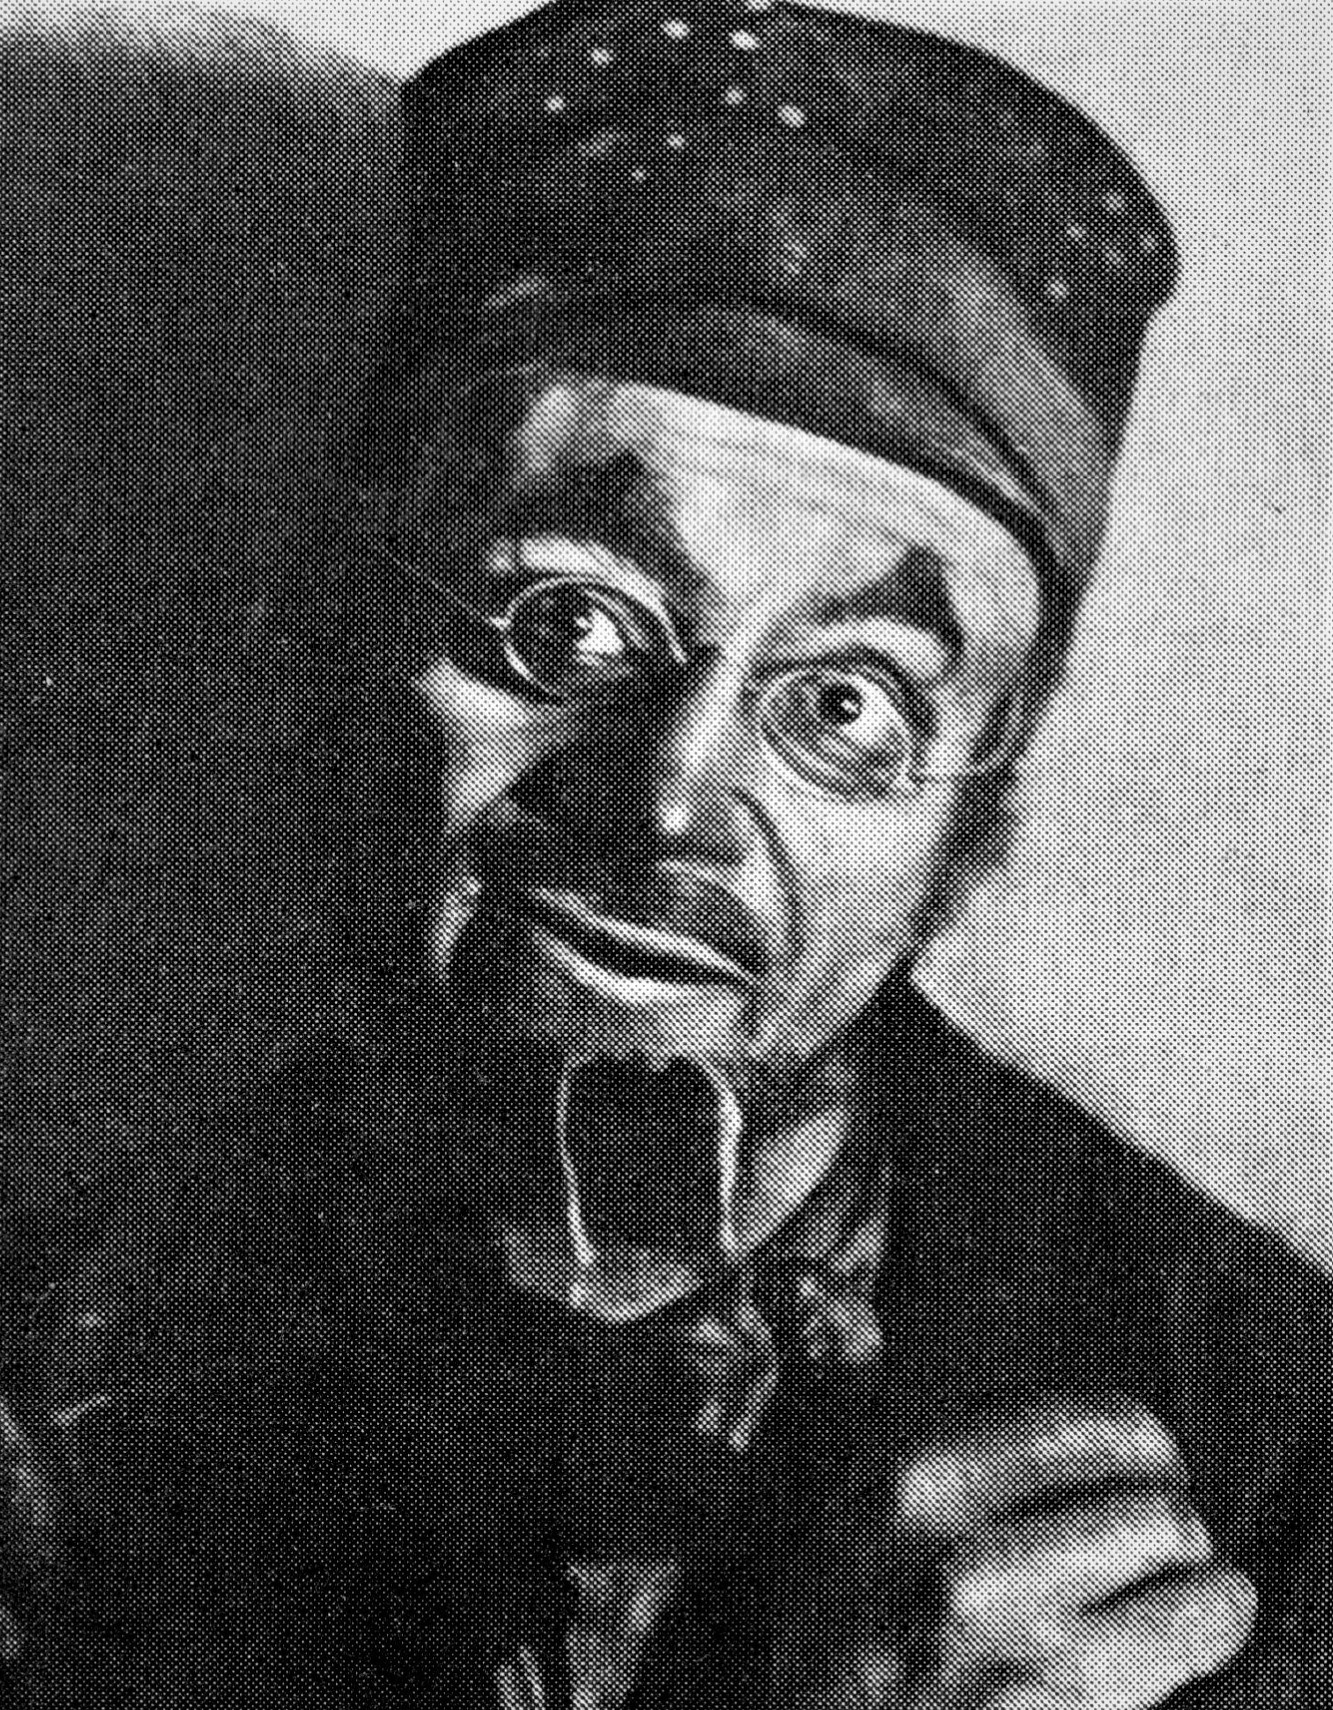 Photographie de Mikhoels dans le rôle Reb Alter dans Mazltov de Sholem-Aleikhem. 
Mise en scène : A. Granovski ; décors, costumes et grimages : M. Chagall.